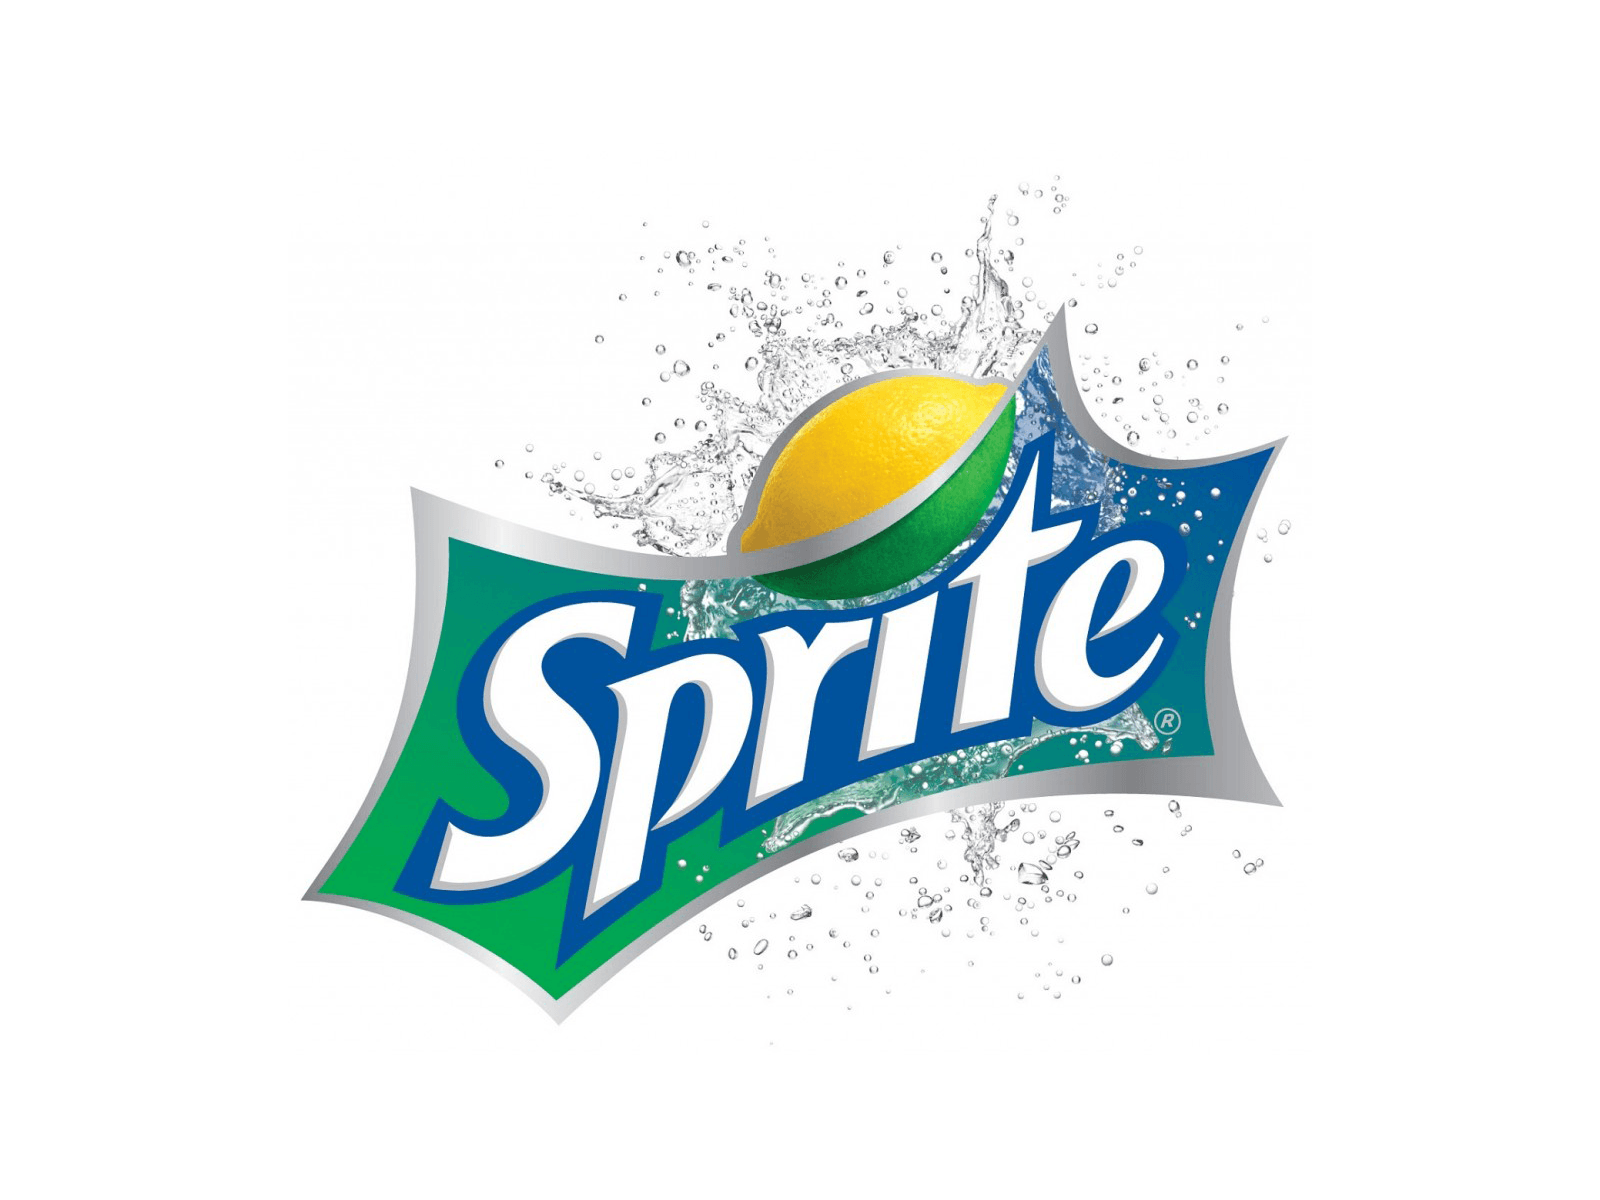 Drink Company Logo - sprite logo」の画像検索結果. Com3 : Redesign Logotype. Logos